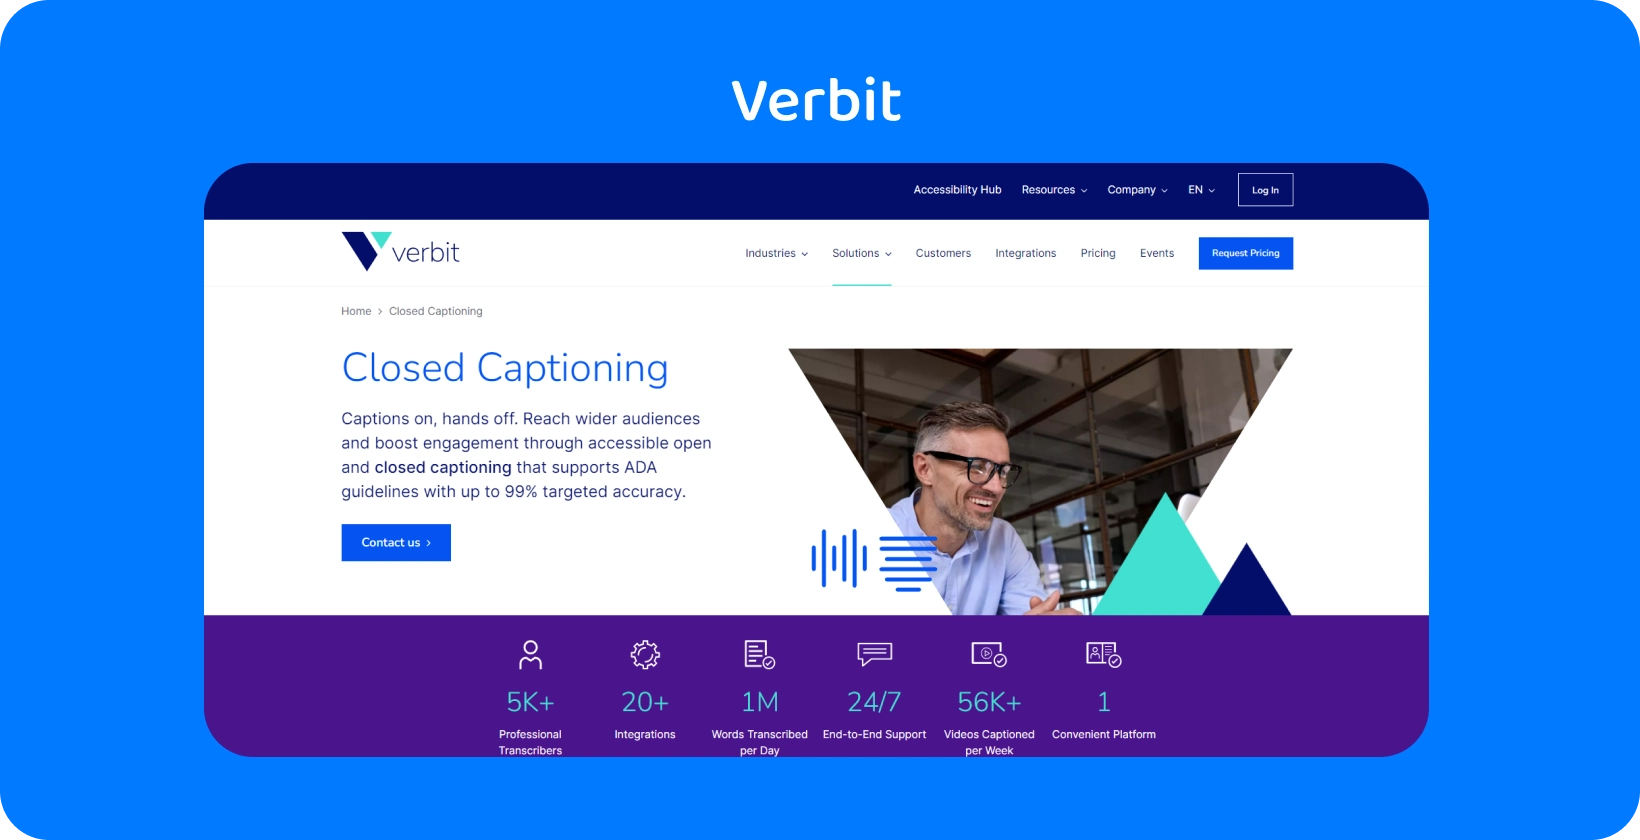 Trang dịch vụ phụ đề và phiên âm của Verbit, cung cấp các tùy chọn hỗ trợ và tự phục vụ chuyên dụng.